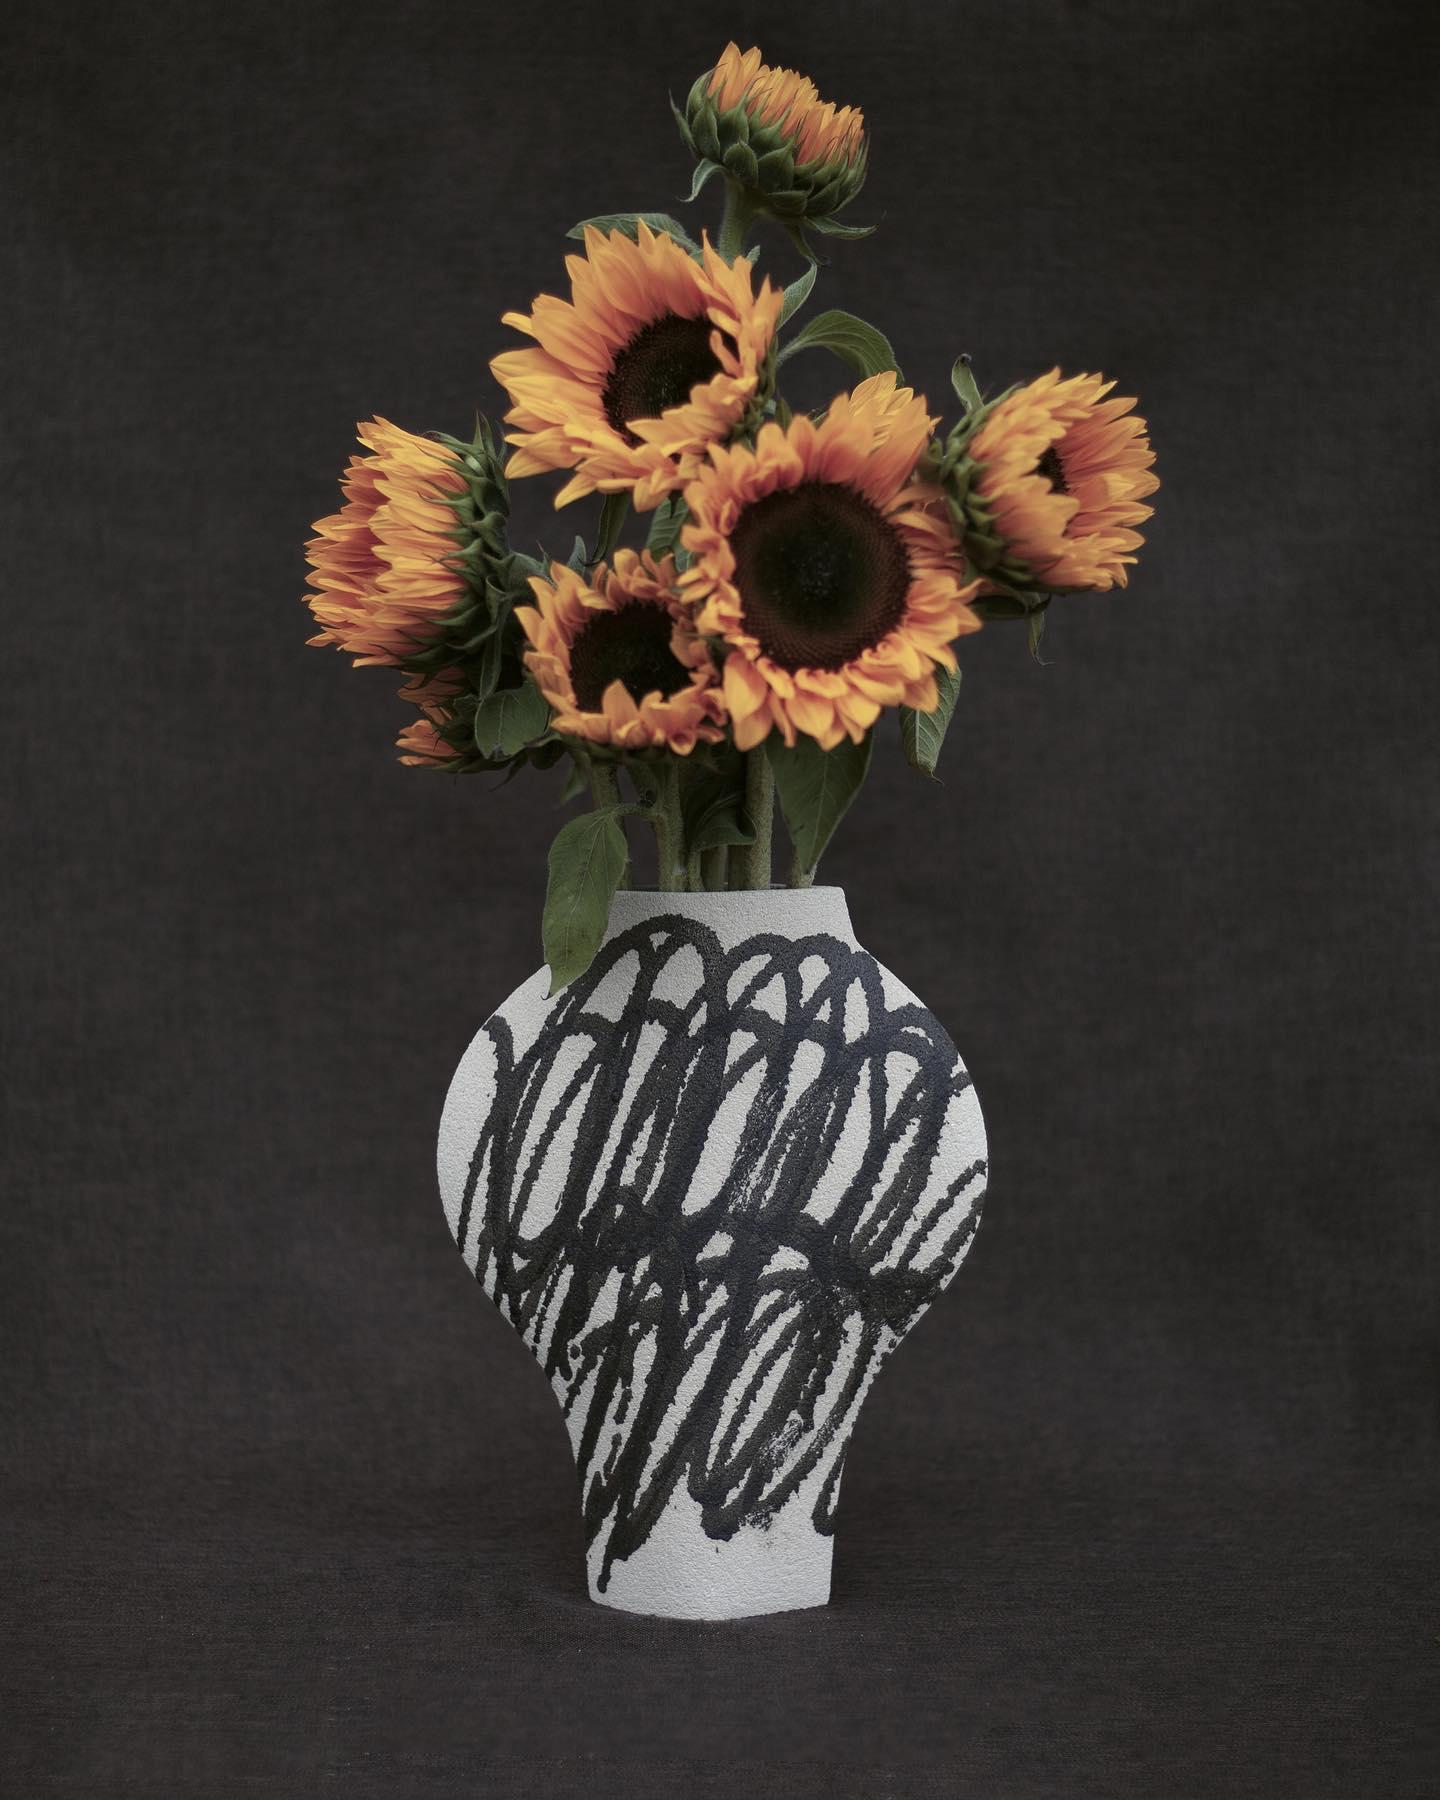 Par INI CERAMIQUE

Vase en céramique blanche fait à la main

Le modèle DAL avec des motifs basés sur des peintures abstraites qui sont appliqués sur le vase avant sa première cuisson, en utilisant une technique de 